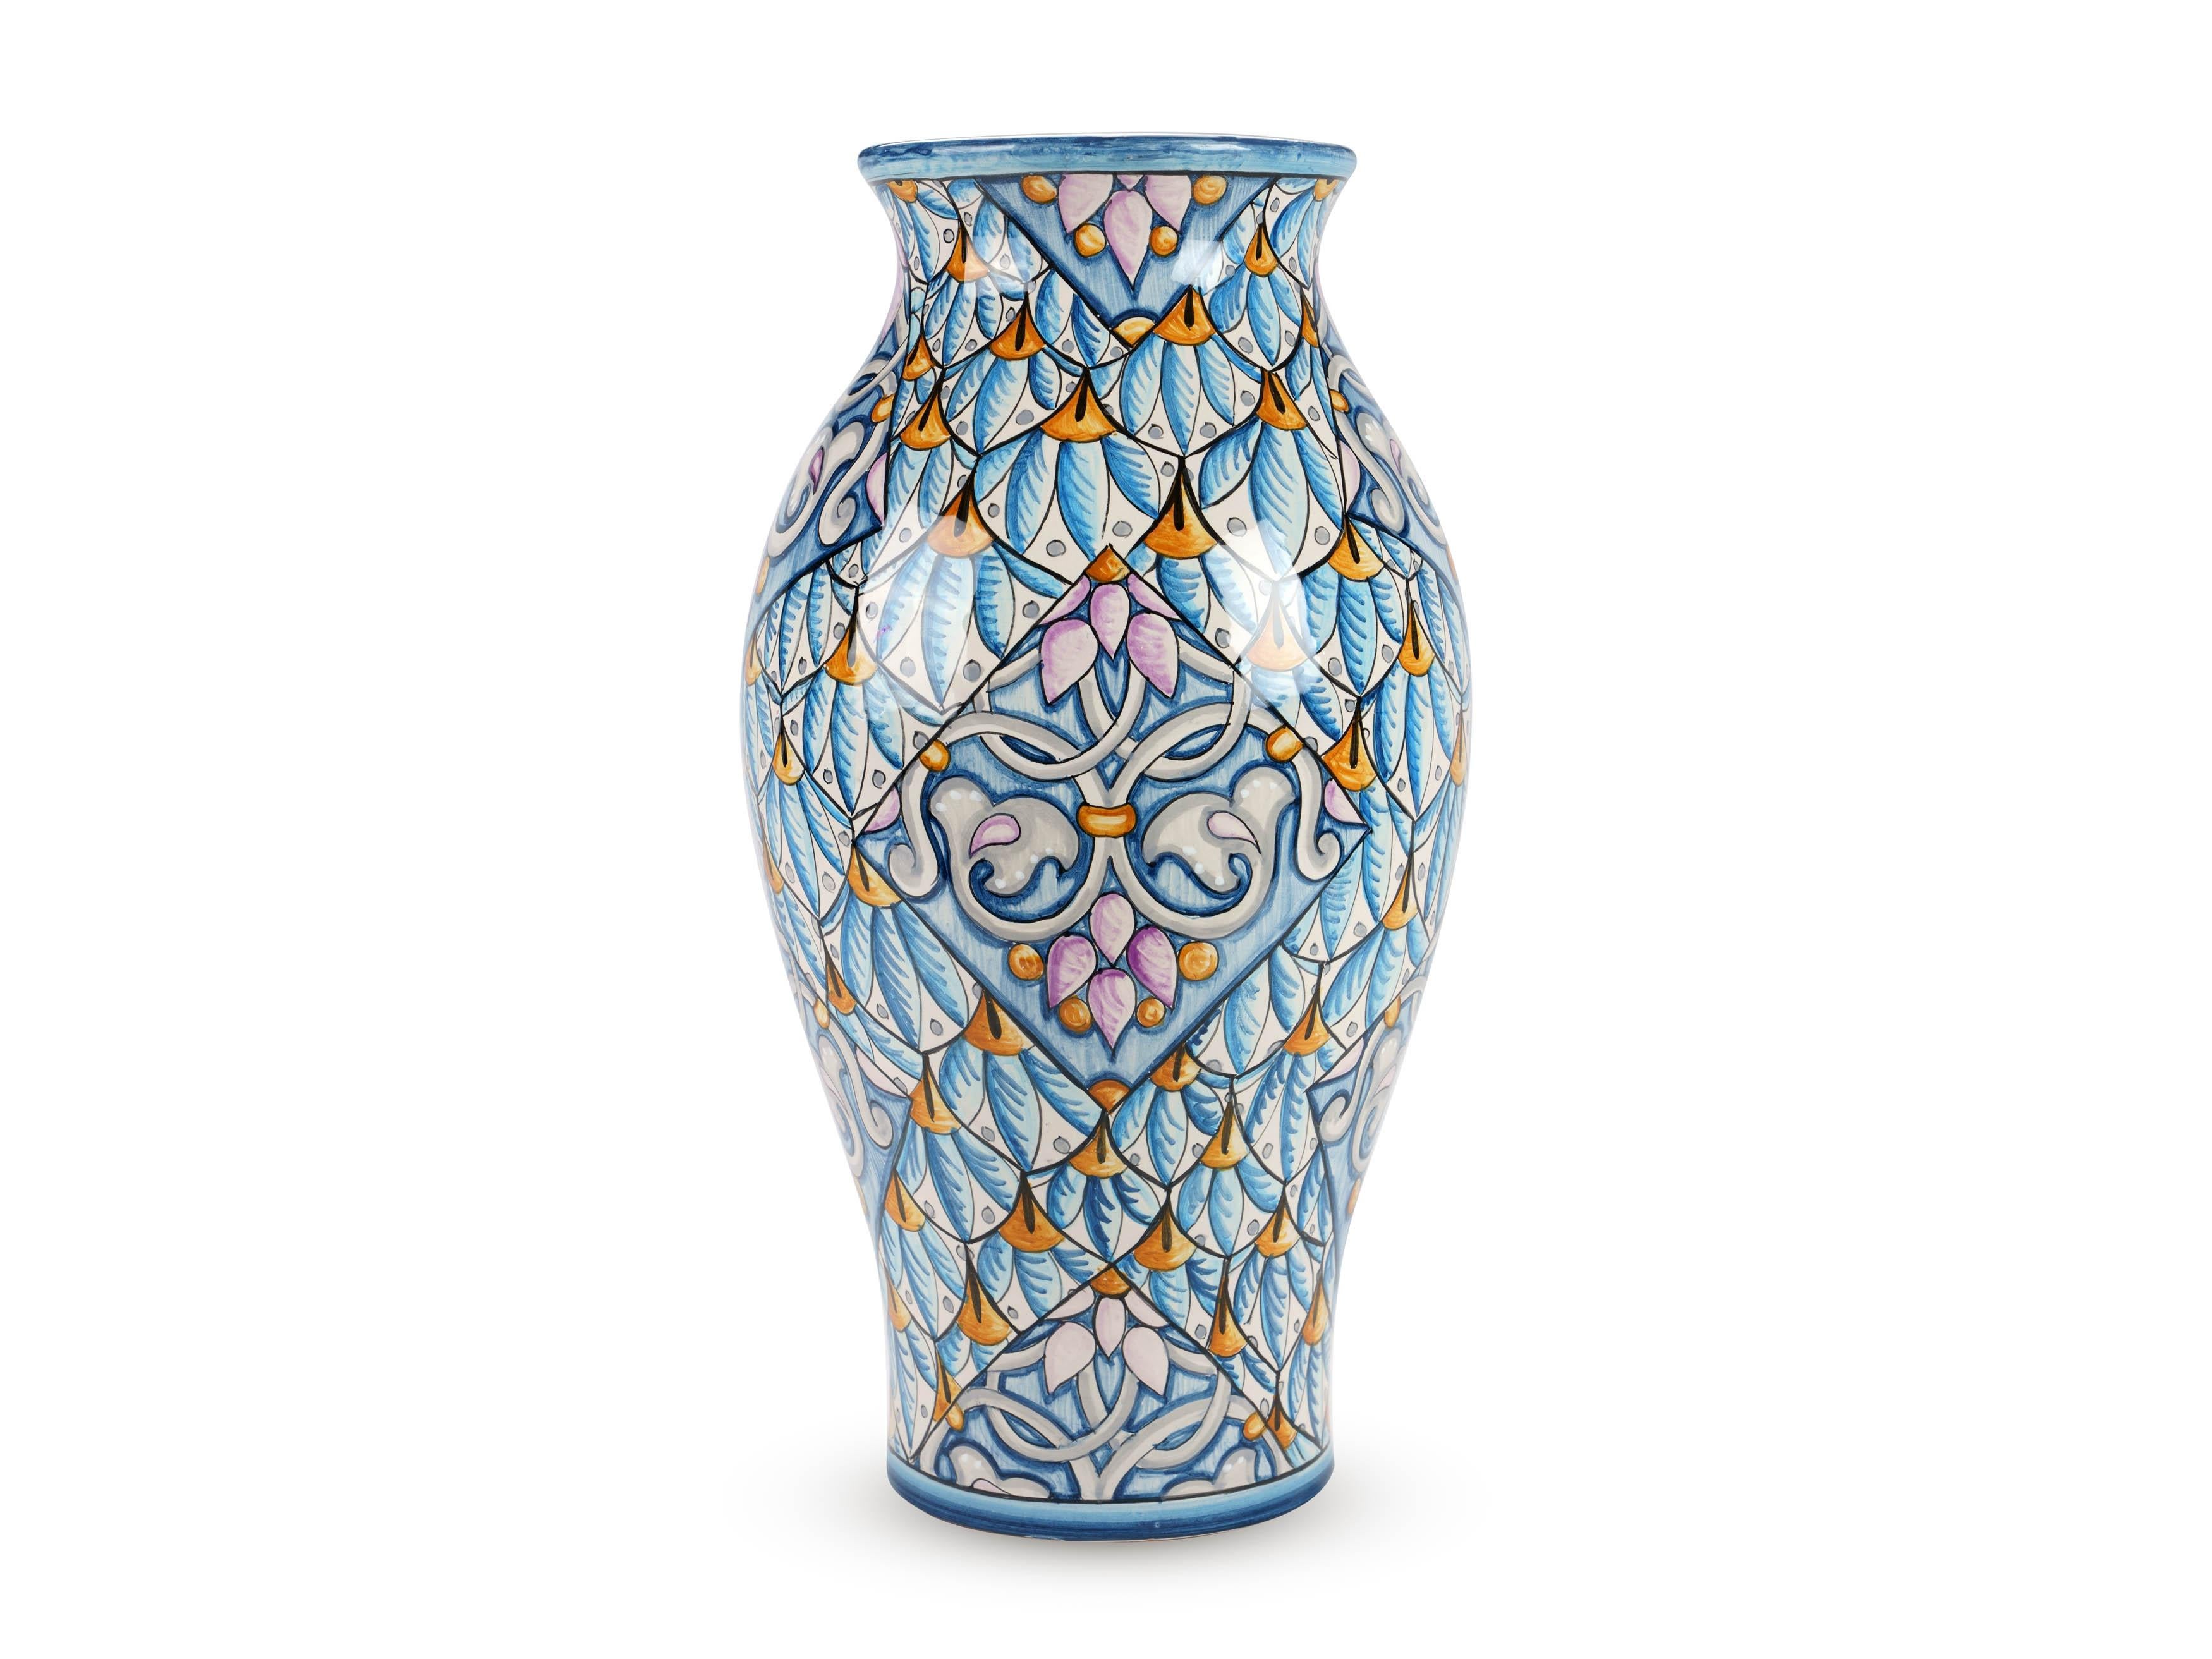 Grand vase décoratif en majolique bleu clair, émaillé en polychromie, caractérisé par la présence élégante de motifs ornementaux en forme de plumes qui rehaussent magnifiquement sa forme. Son impact esthétique puissant est assuré par les décorations